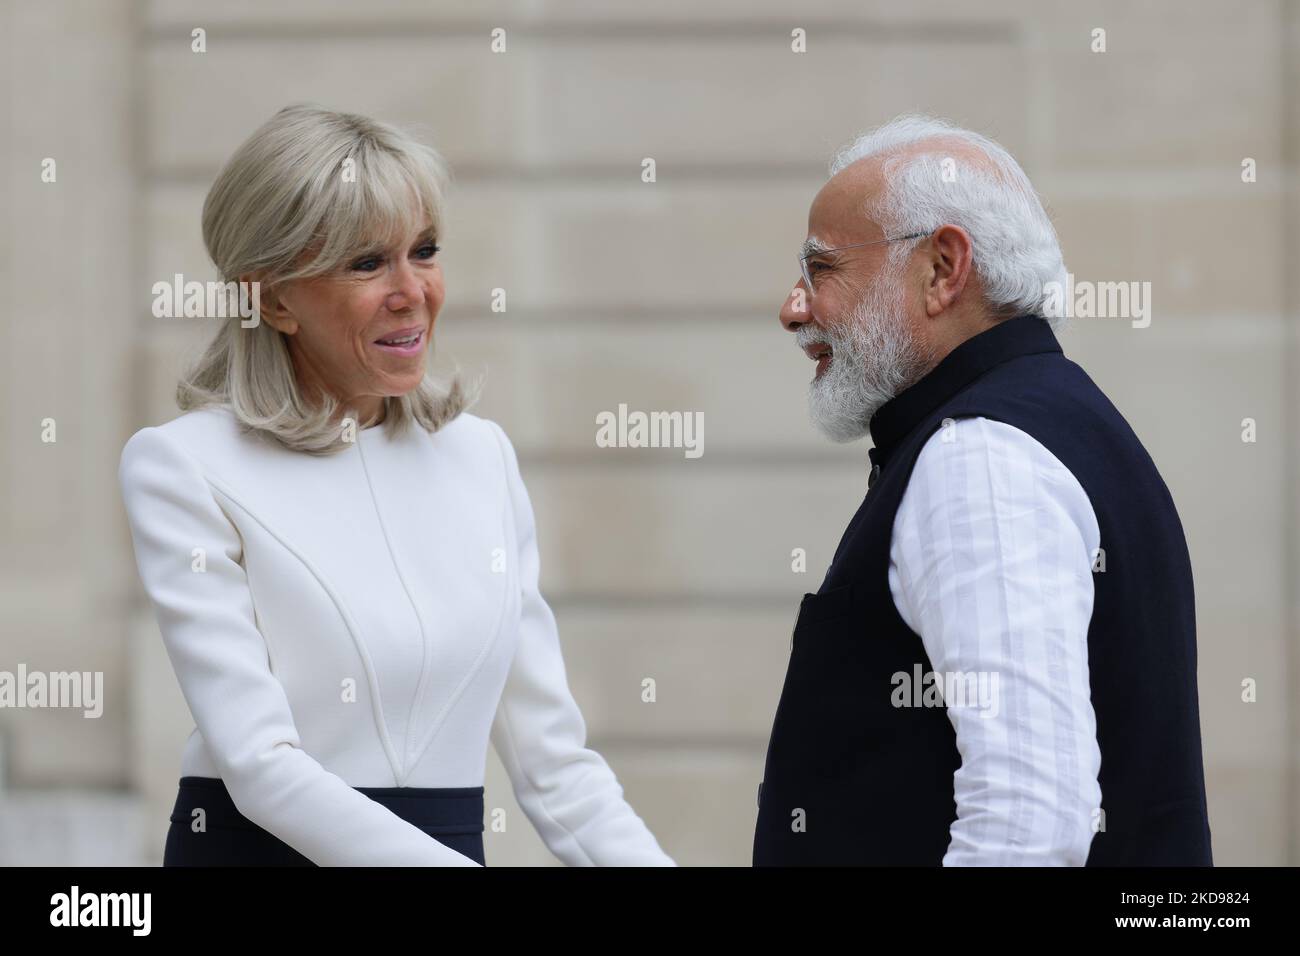 Brigitte Macron (L) - épouse du Président français Macron - accueille le Premier ministre indien Narendra Modi (R) au Palais présidentiel de l'Elysée - 4 mai 2022, Paris (photo de Daniel Pier/NurPhoto) Banque D'Images